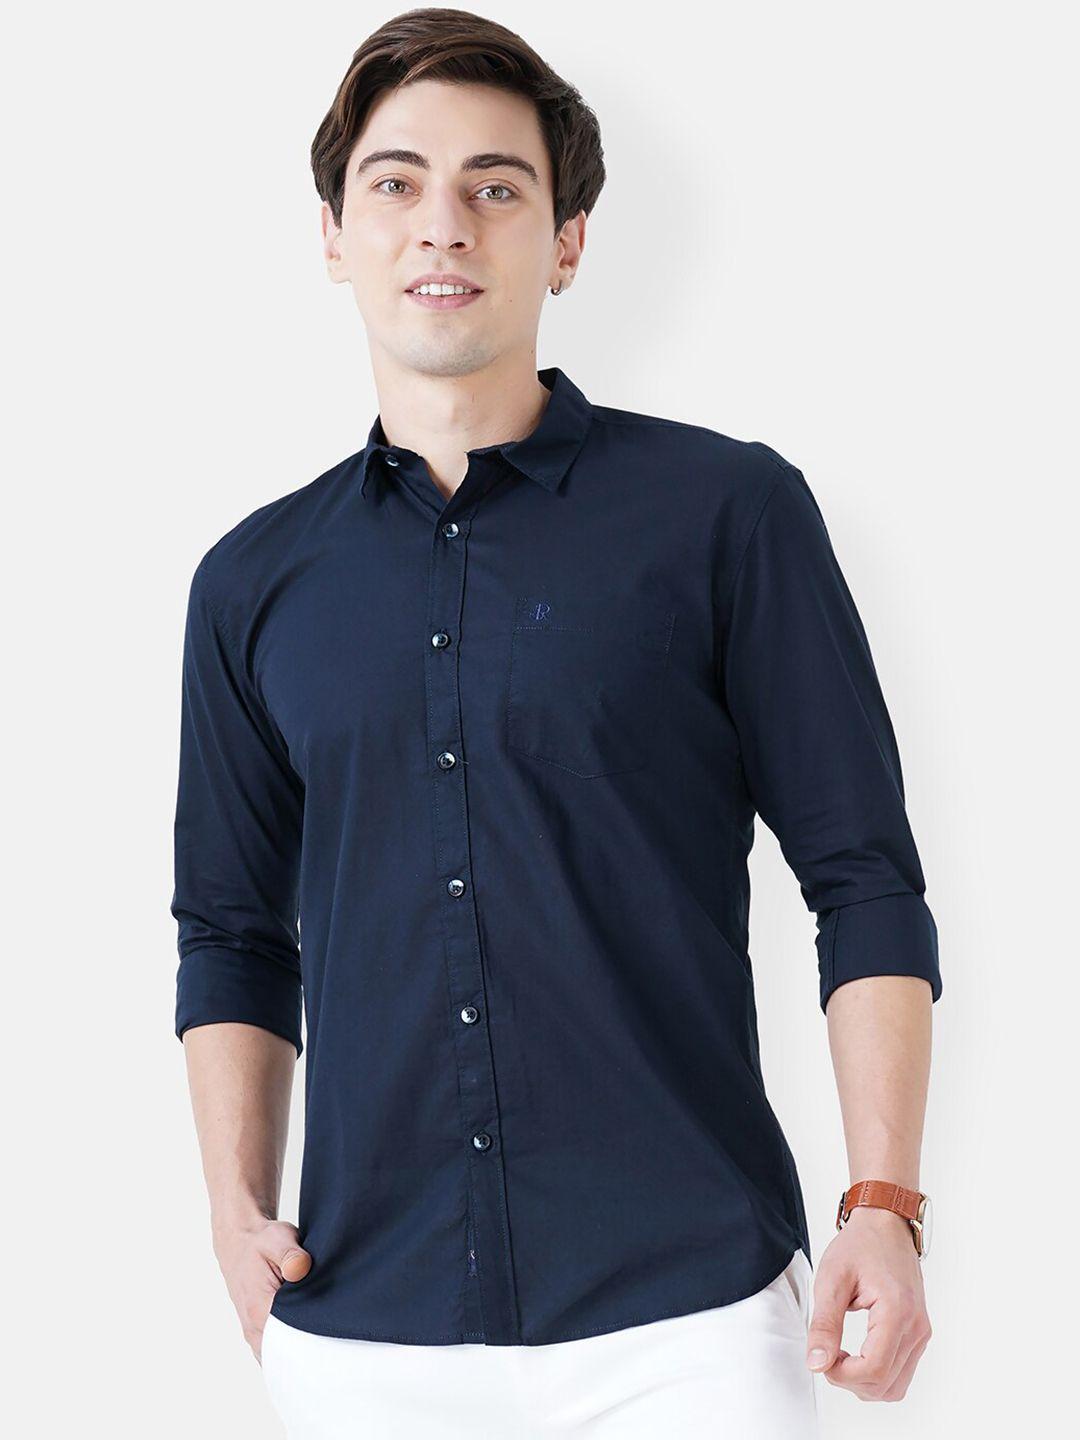 soratia men navy blue solid cotton slim fit casual shirt